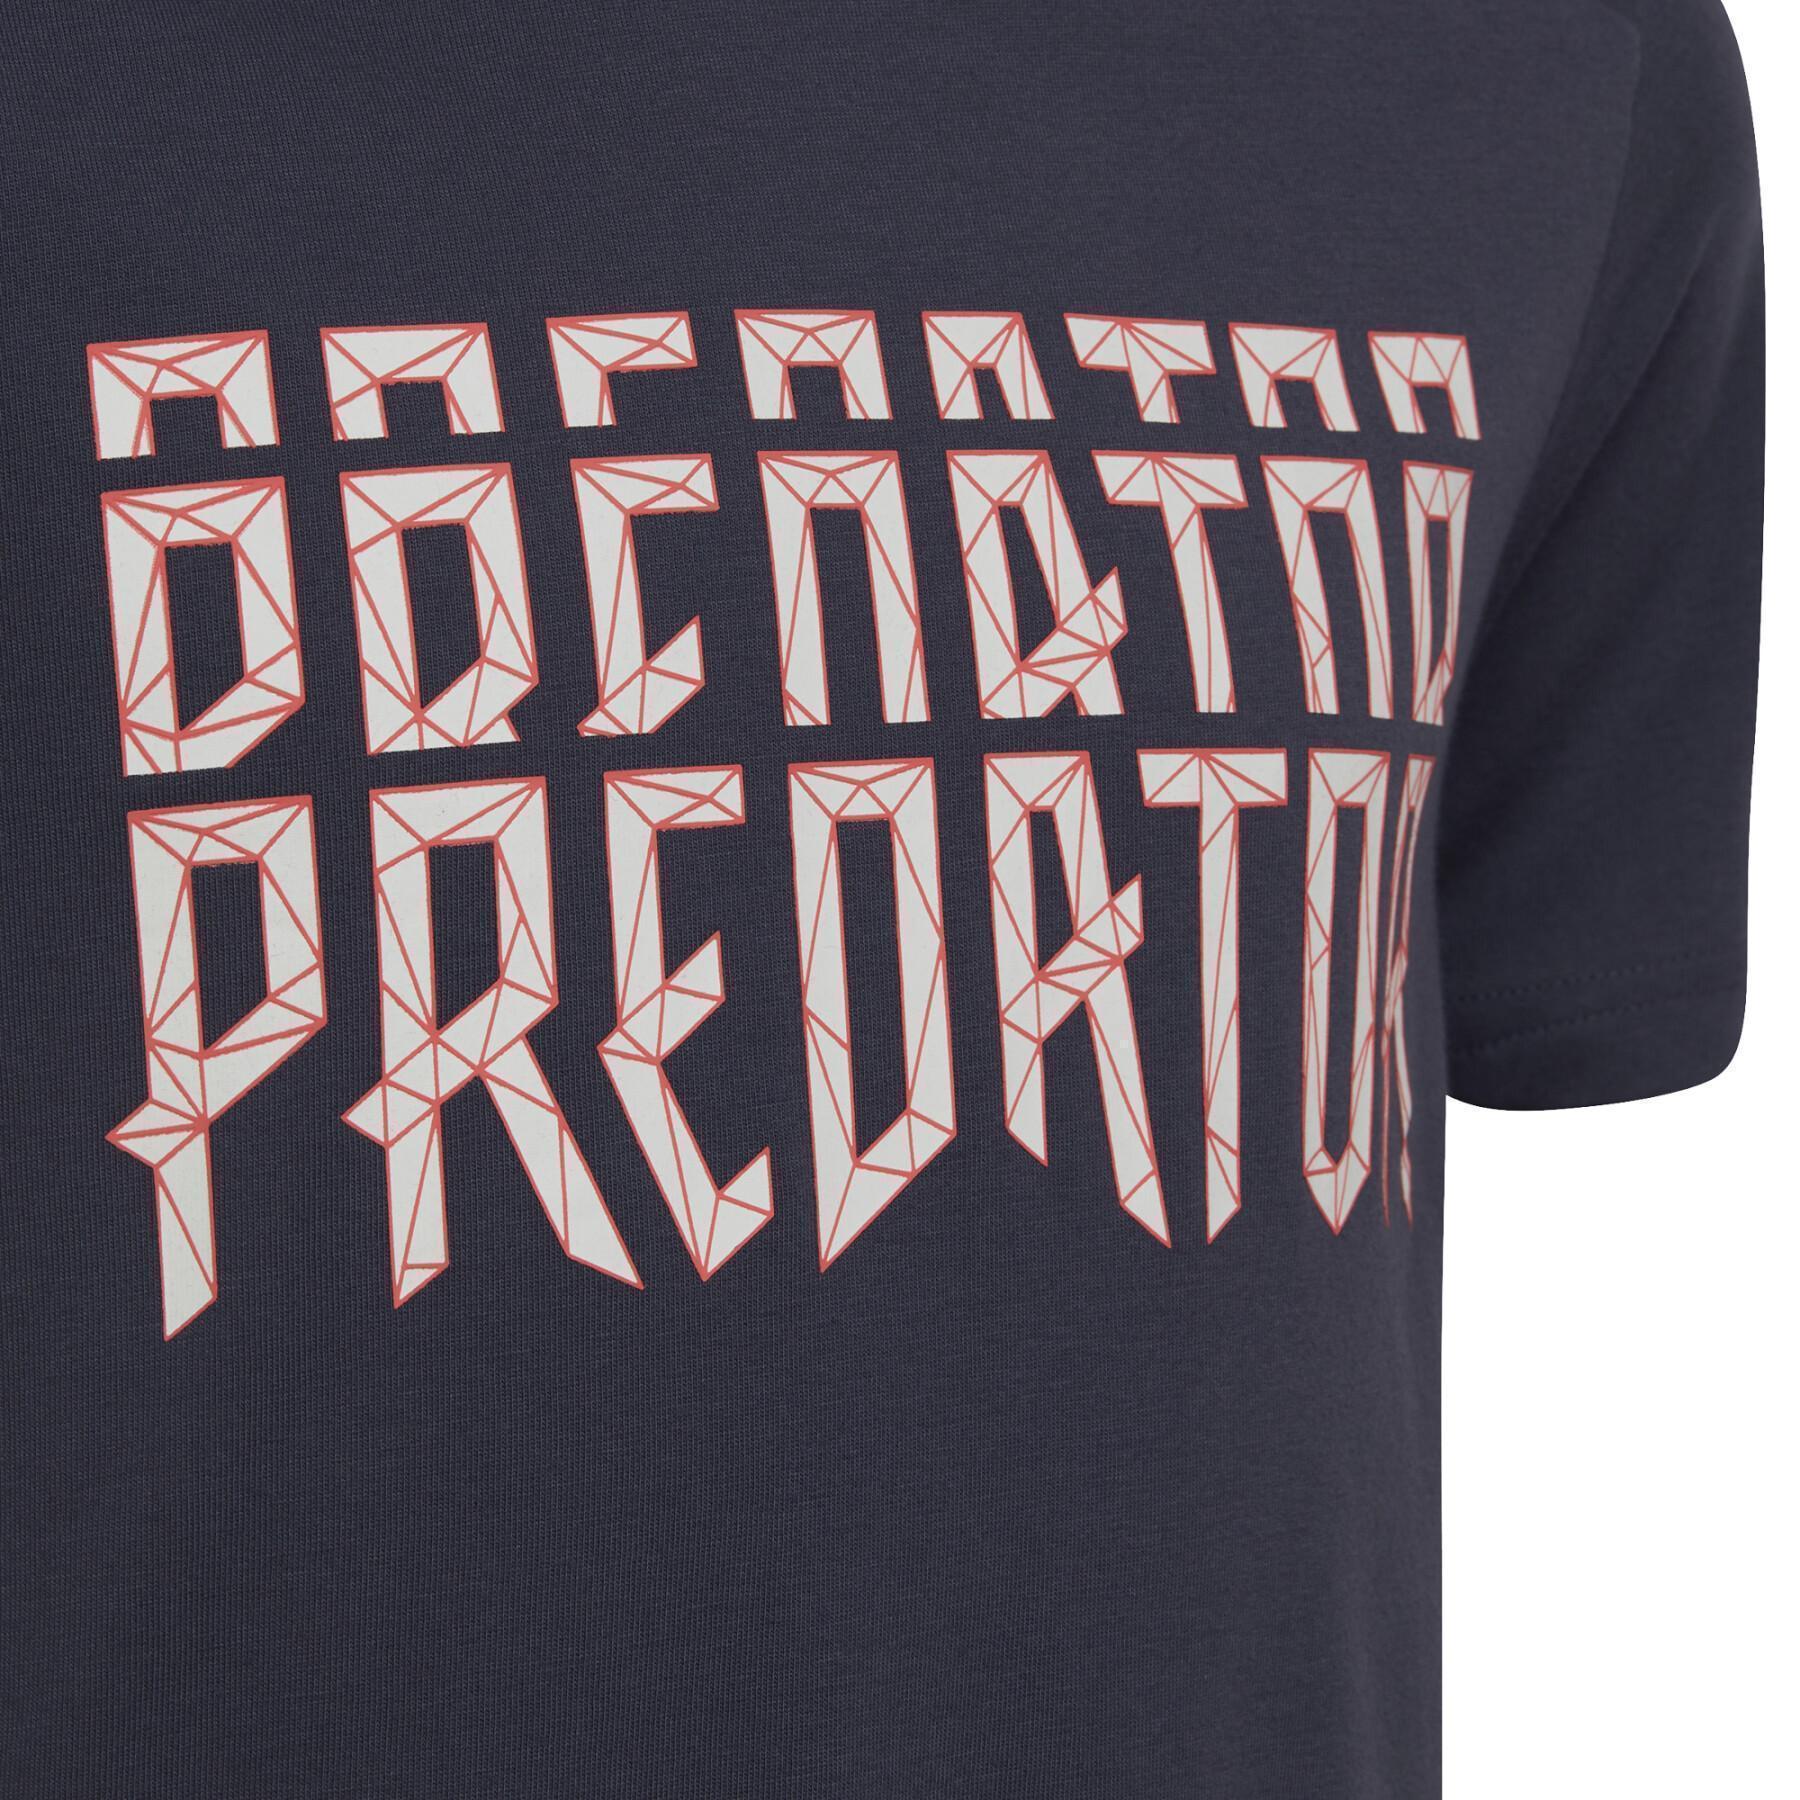 T-shirt de criança adidas Predator